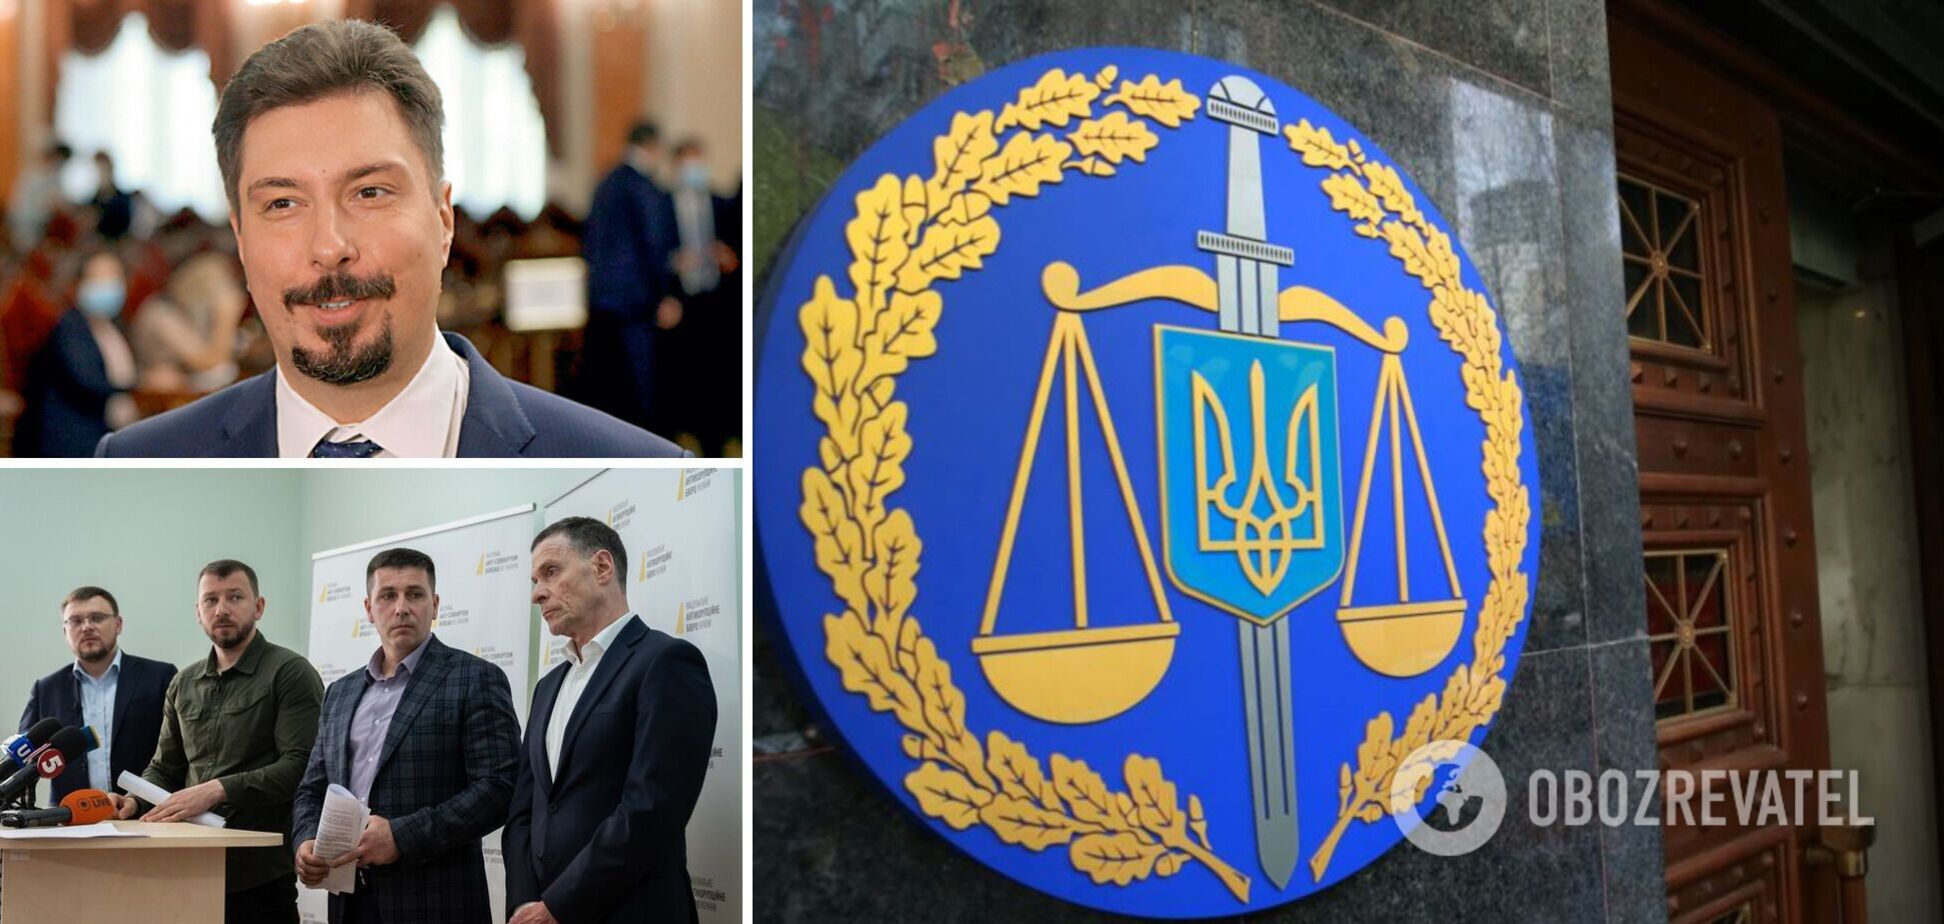 'Таємниця телефону Князєва': чому розгорілася 'війна' навколо справи ексглави Верховного суду й що намагалися приховати 